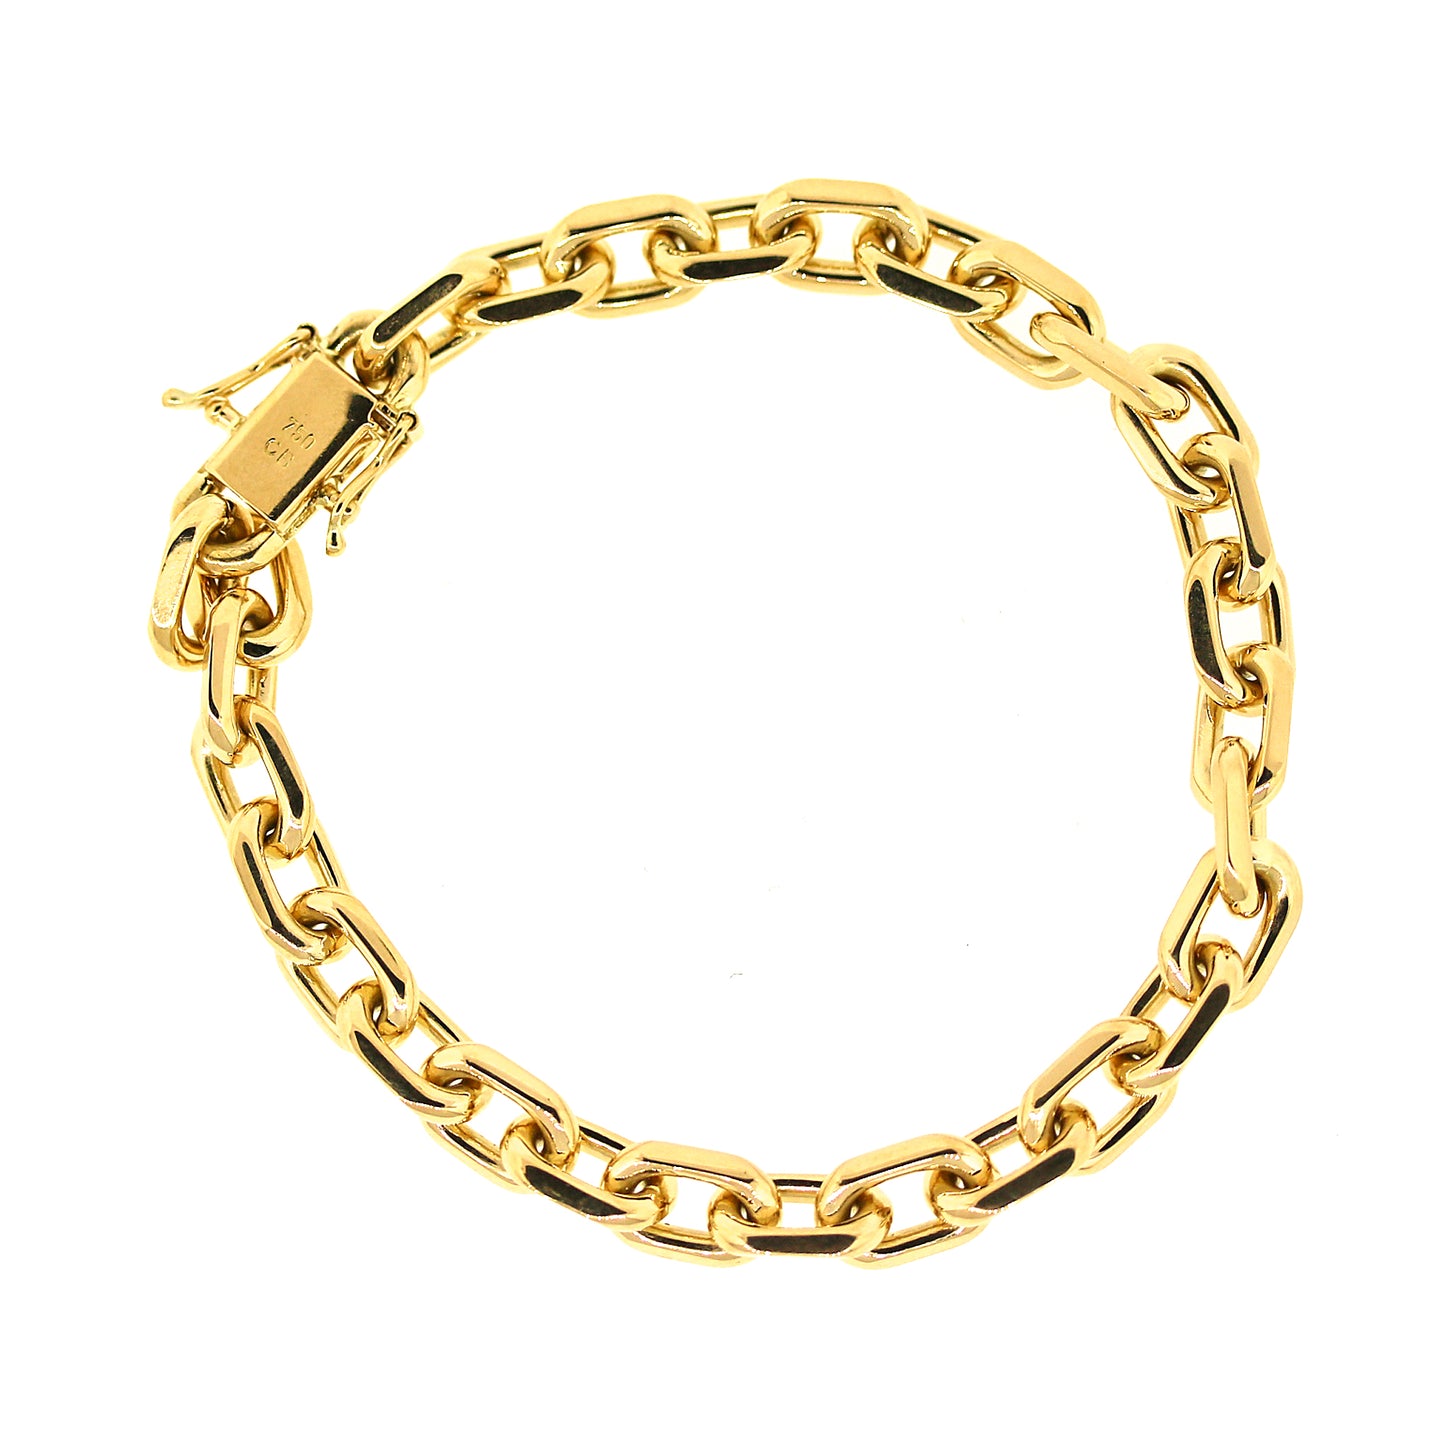 18k solid gold bracelet | Solid gold bracelet, Bracelet shops, Gold bracelet